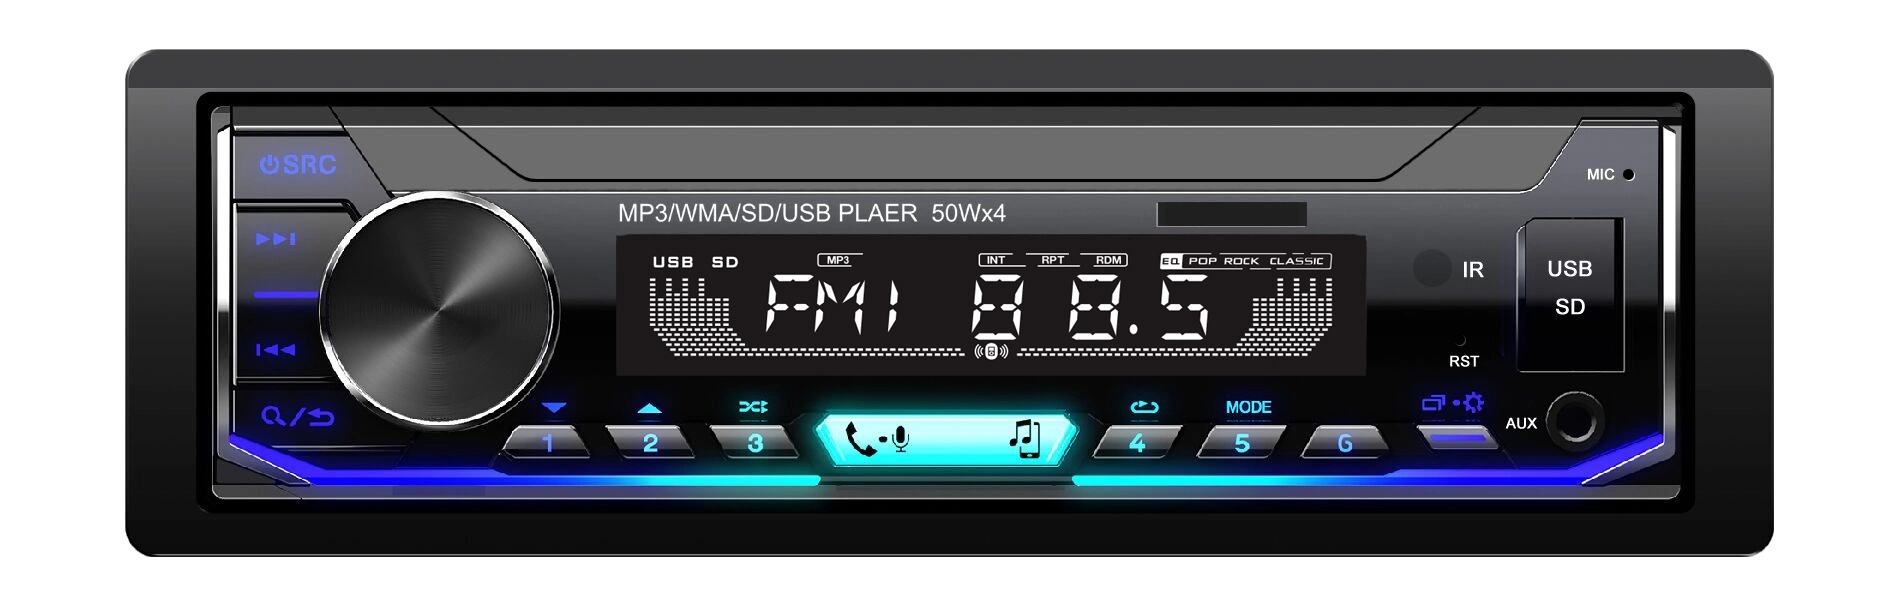 Com Rádio digital FM Car Audio player de MP3 Transmissor FM